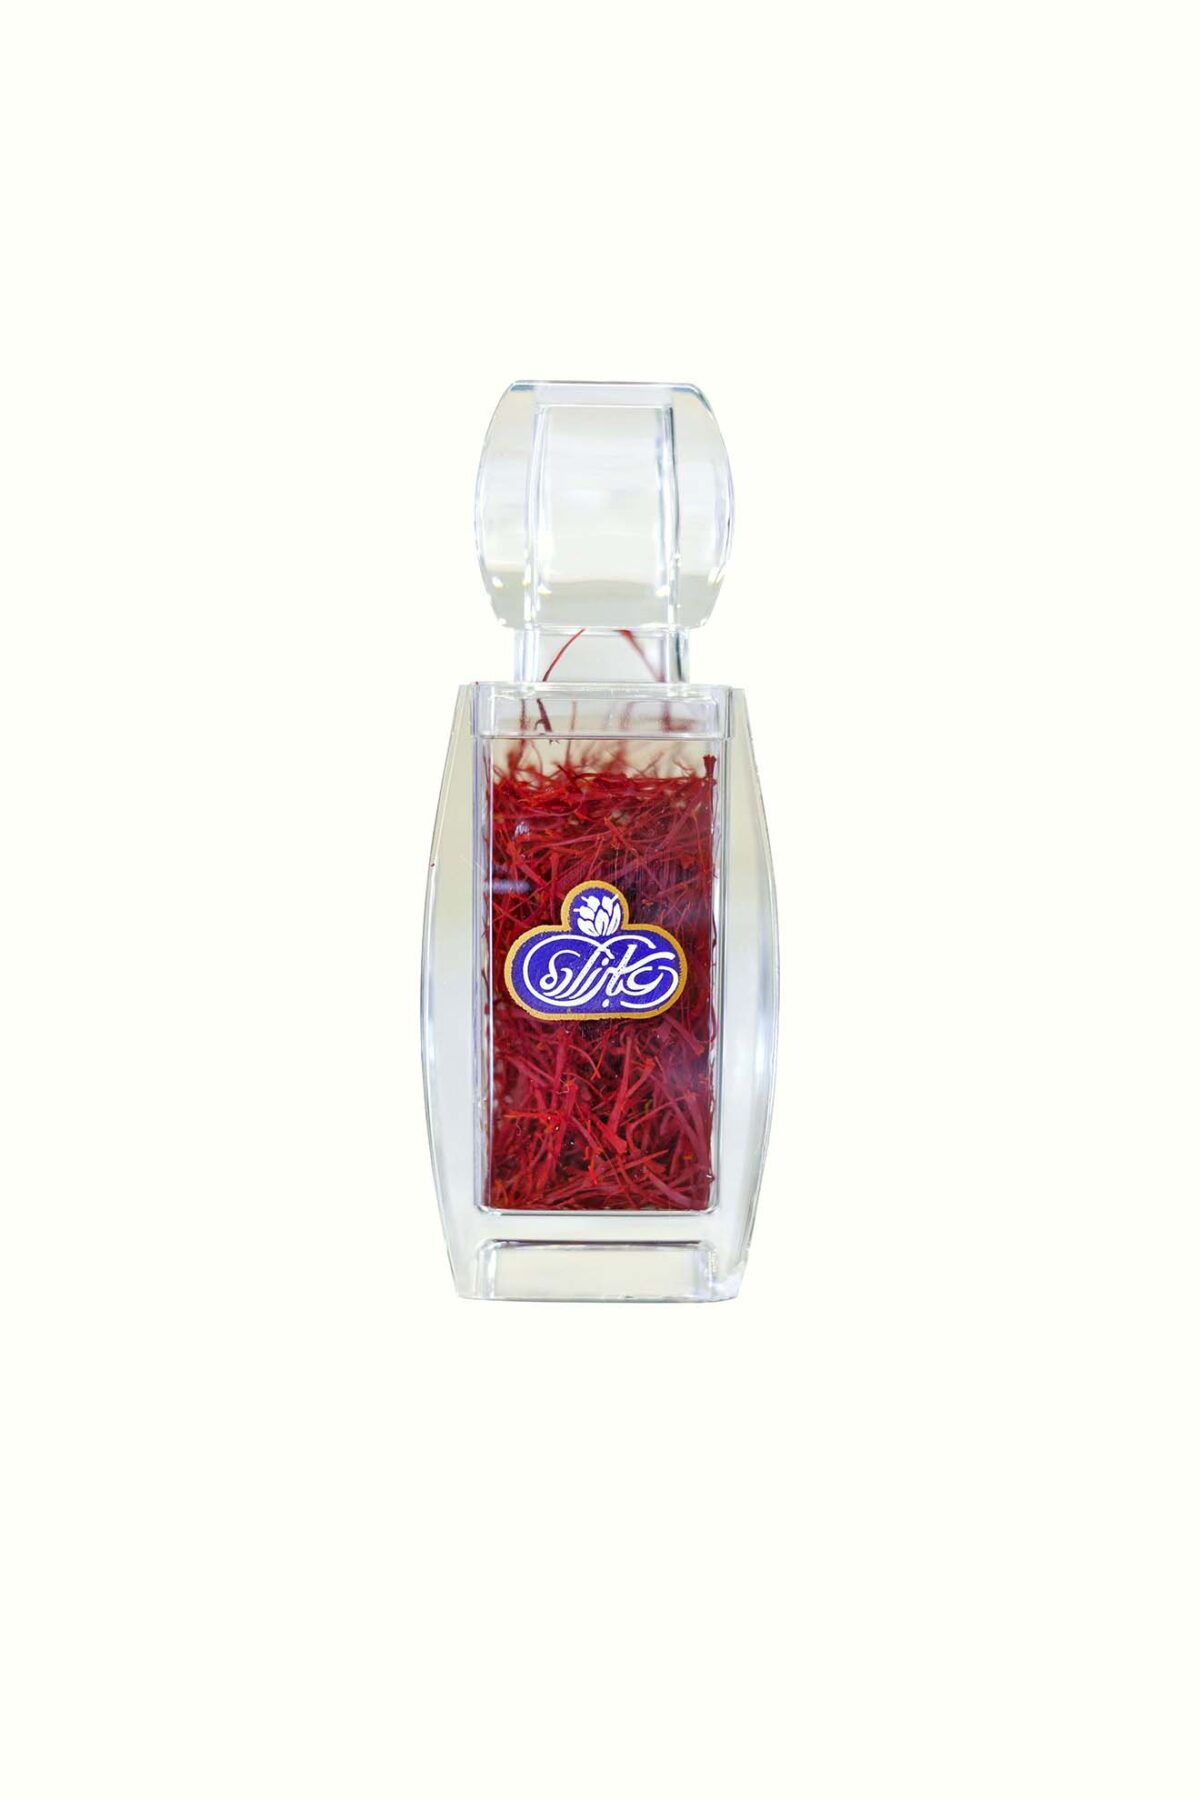 Premium Super Negin Saffron Threads - 1 gram | Glass Bottle